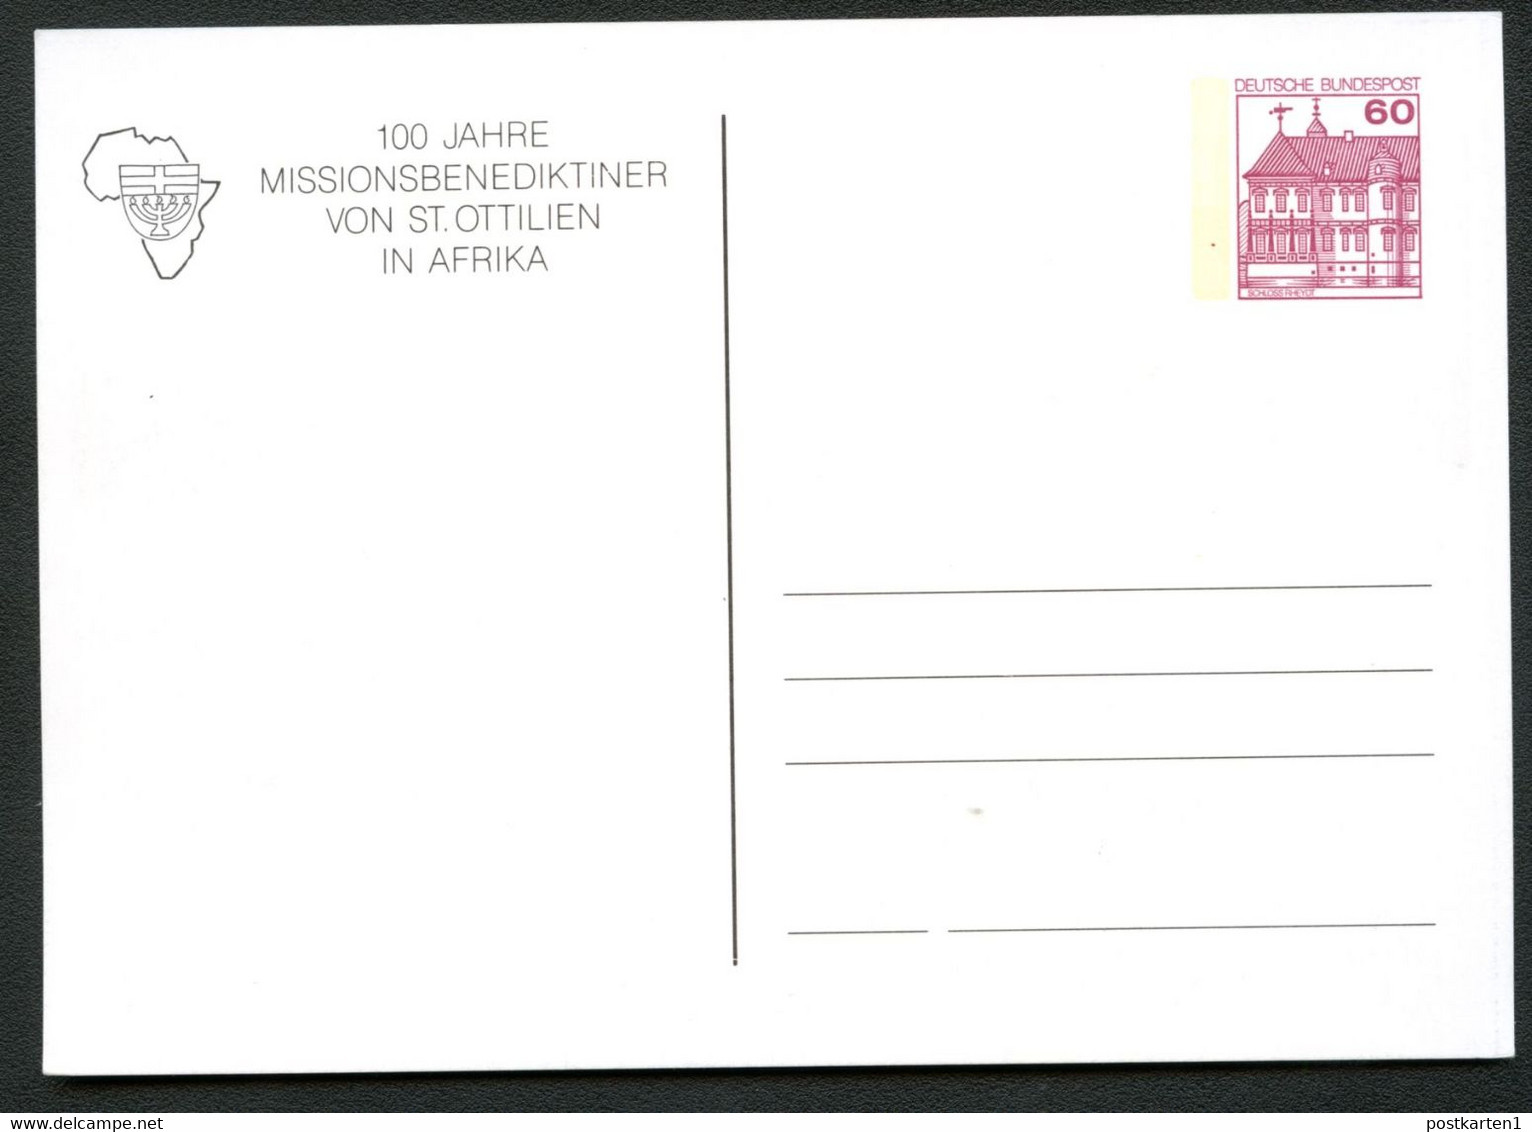 Bund PP106 B2/053 MISSIONSBENEDIKTINER AFRIKA DARESSALAM St. Ottilien 1987 - Privatpostkarten - Ungebraucht